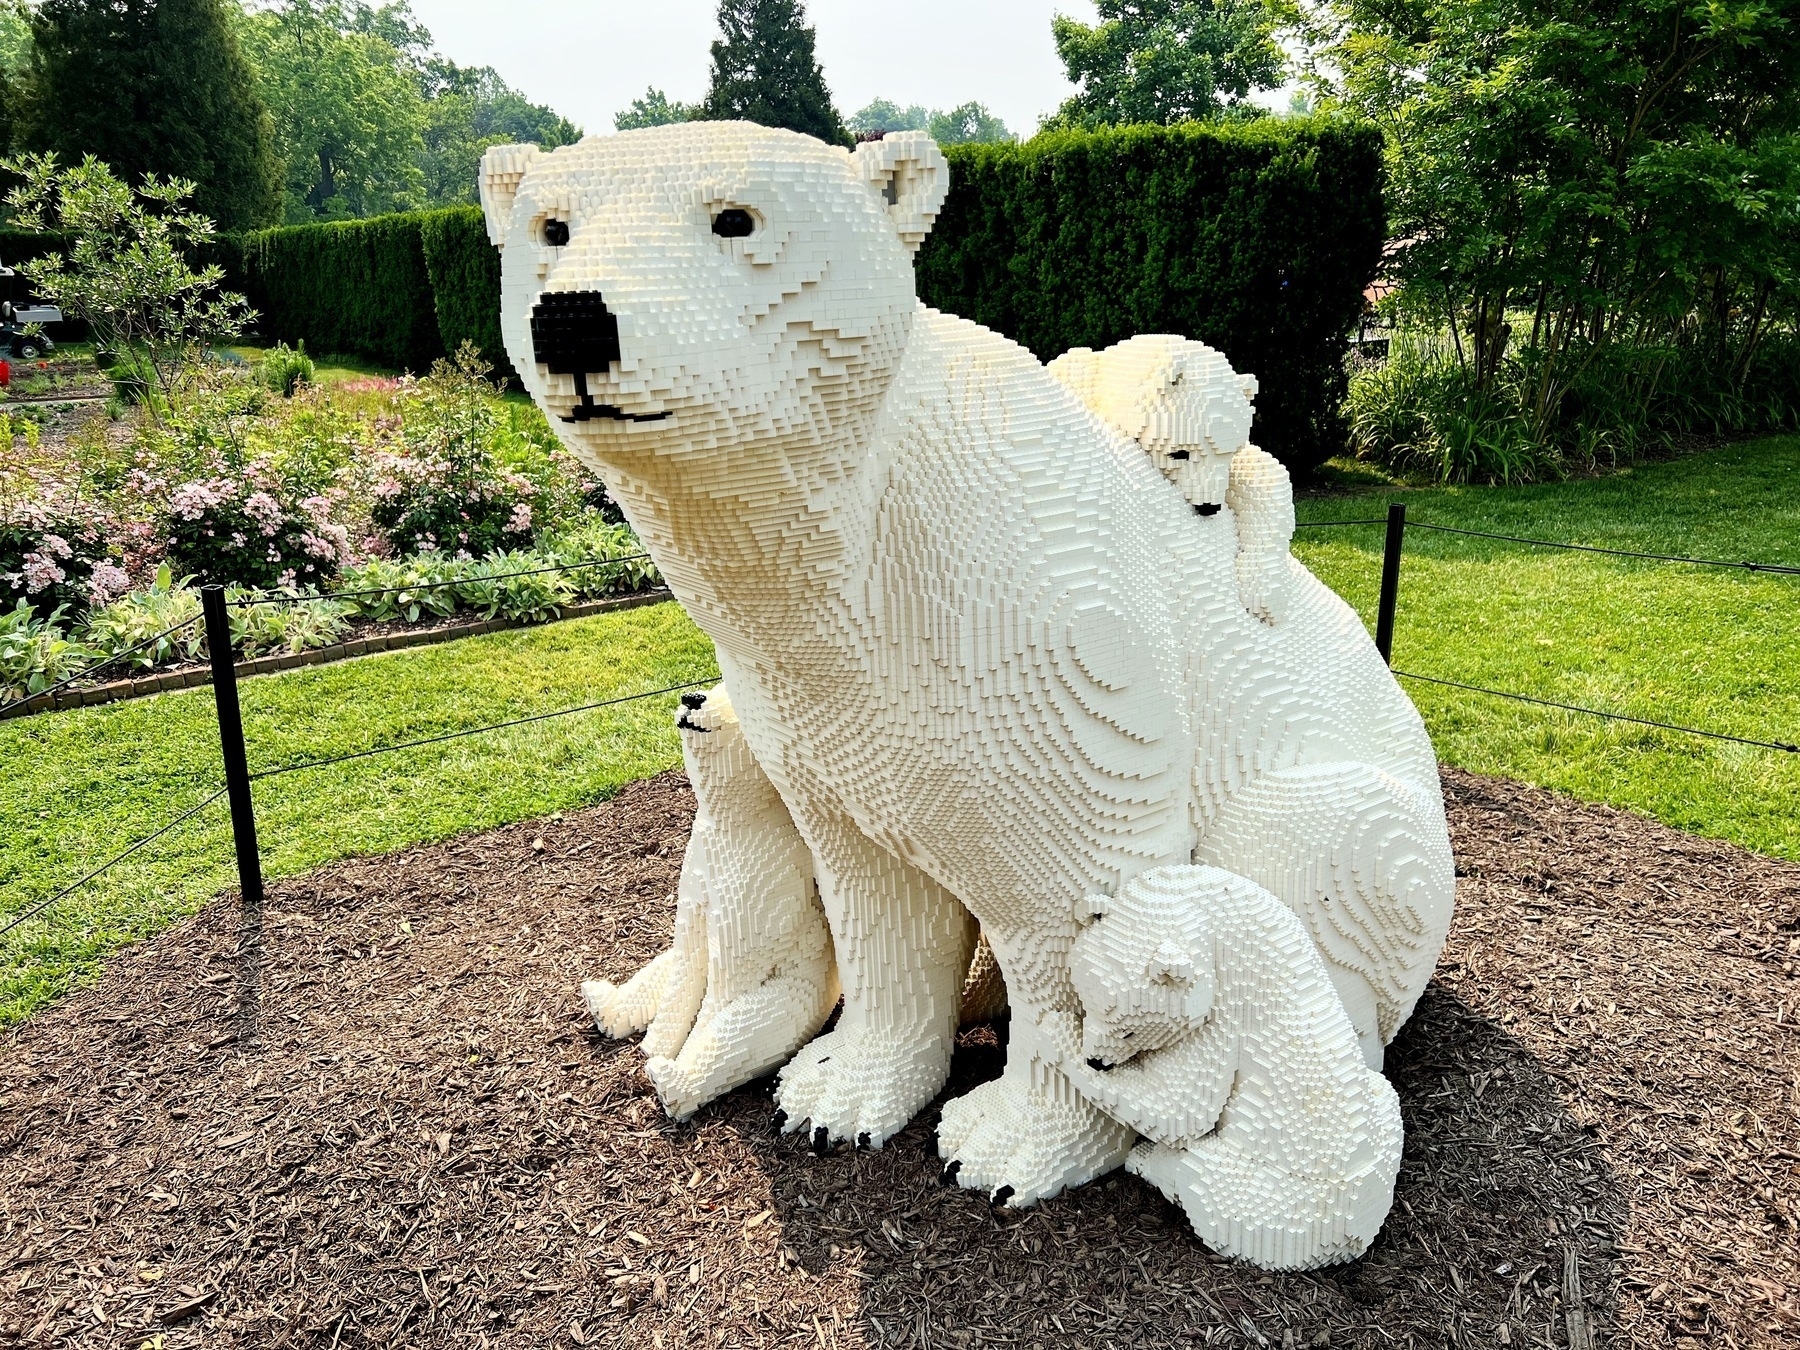 Polar bear and cubs in LEGO